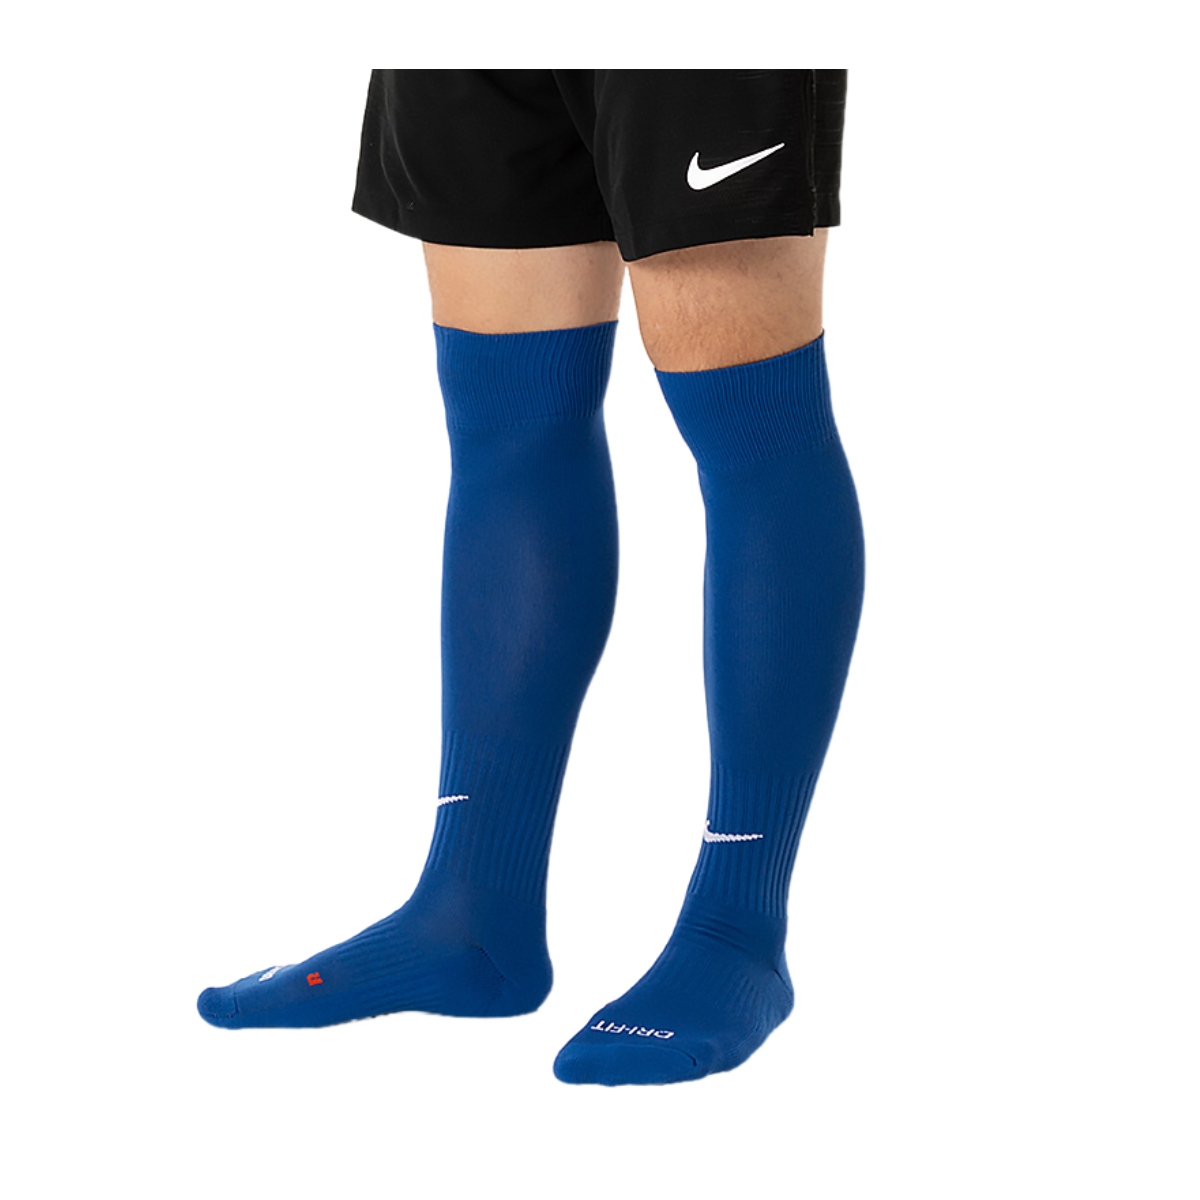 Calcetas Nike de Futbol Academy Azul Marino-hombre SX4120-401